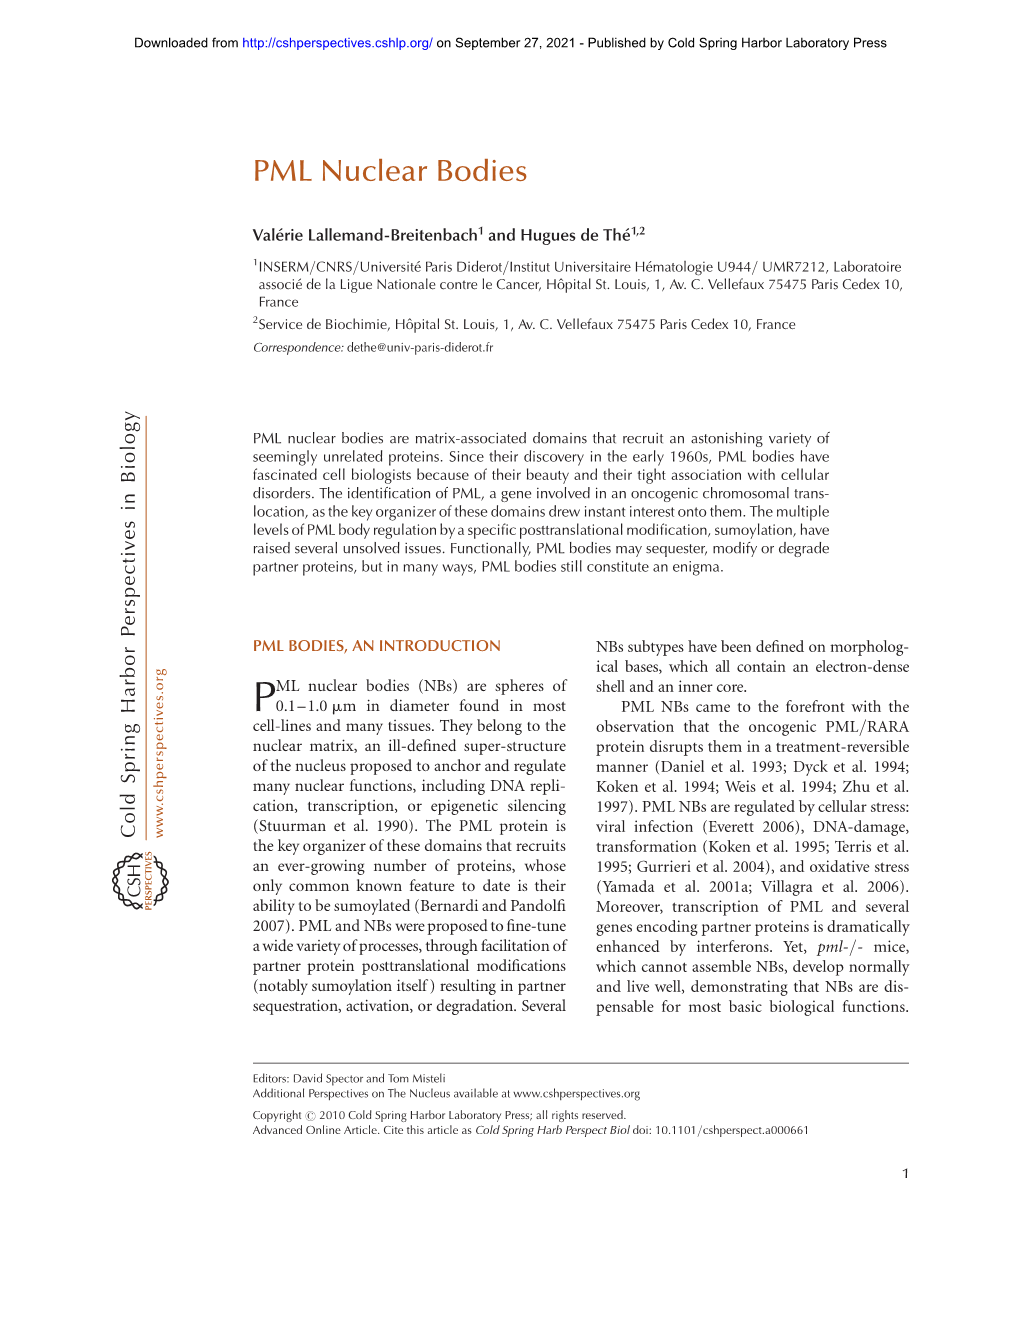 PML Nuclear Bodies